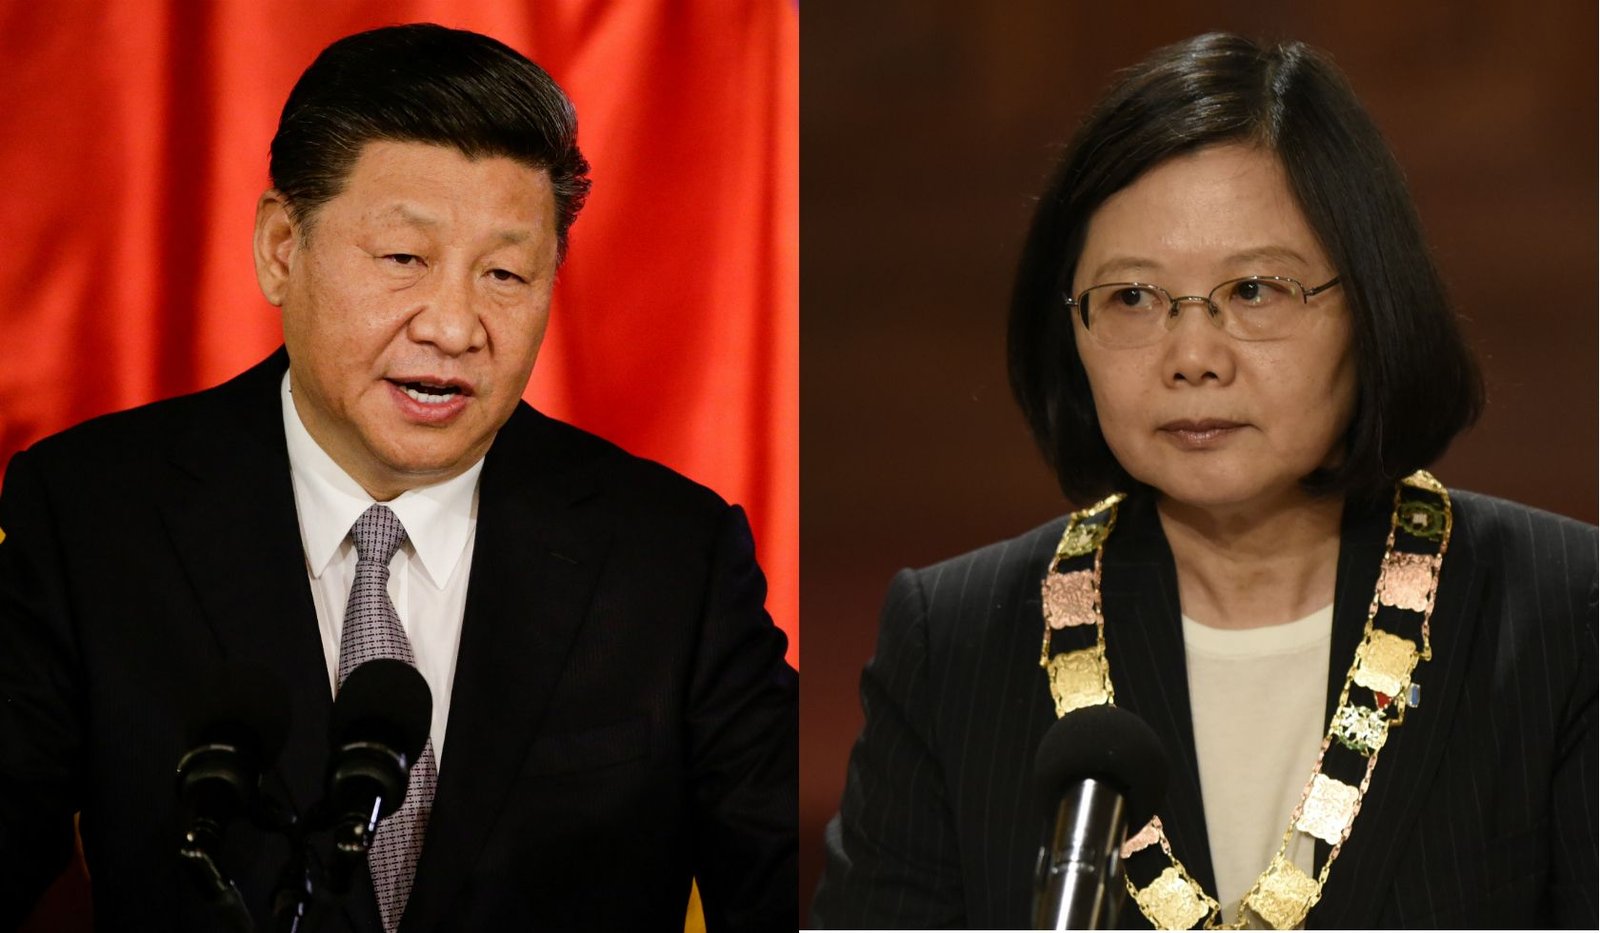 Xi Jinping and Tsai Ing-wen